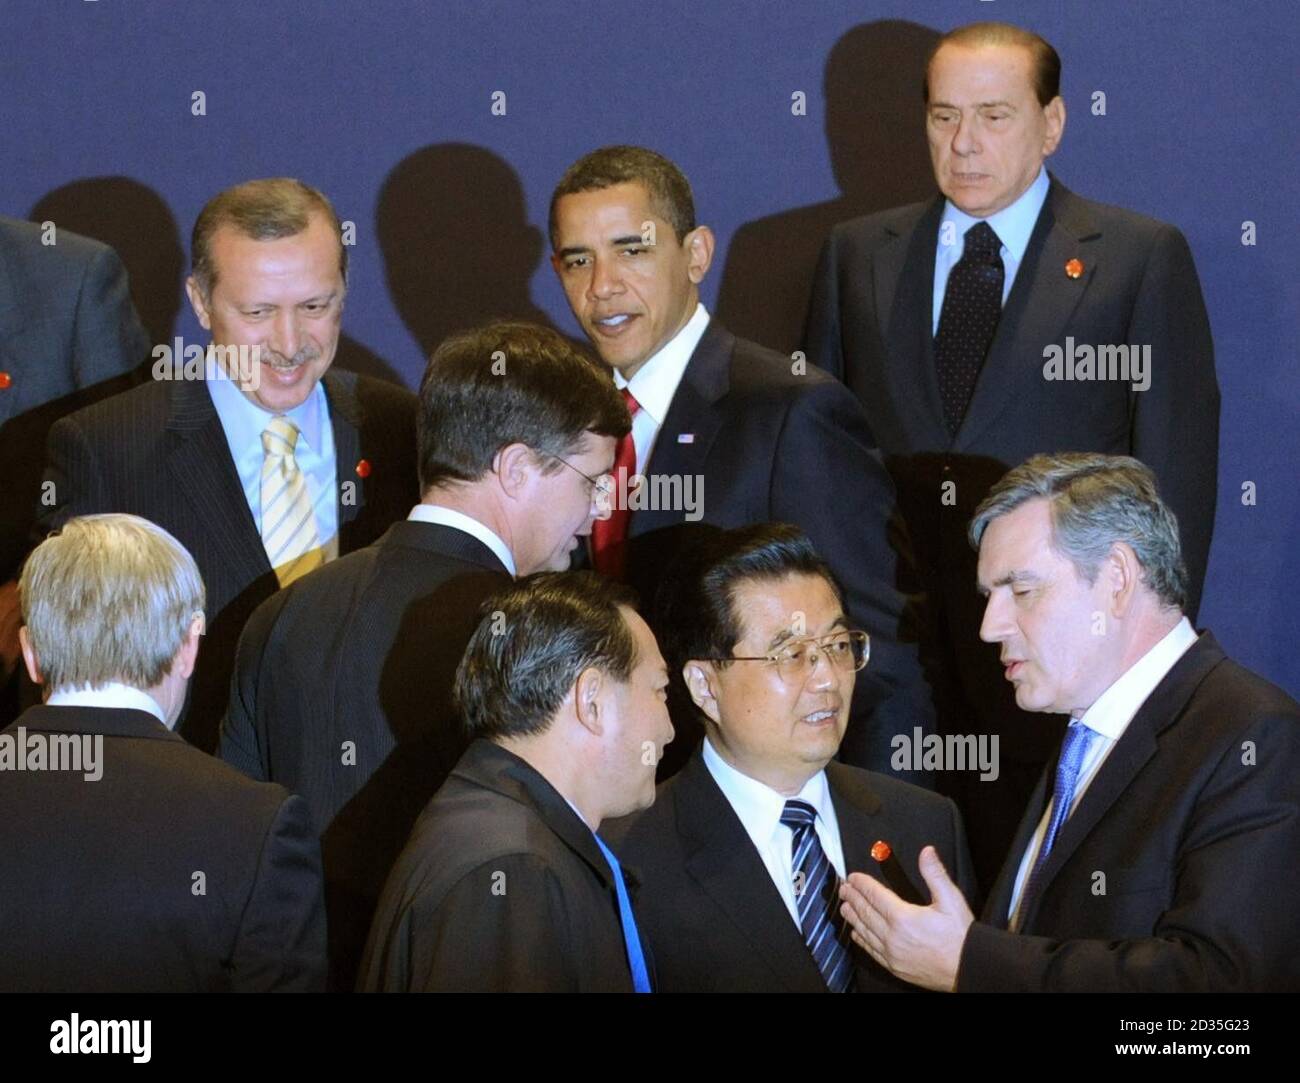 El primer ministro Gordon Brown habla con el presidente chino Hu Jintao mientras presentan una fotografía de grupo al comienzo de la Cumbre del G20 en Londres hoy. Foto de stock